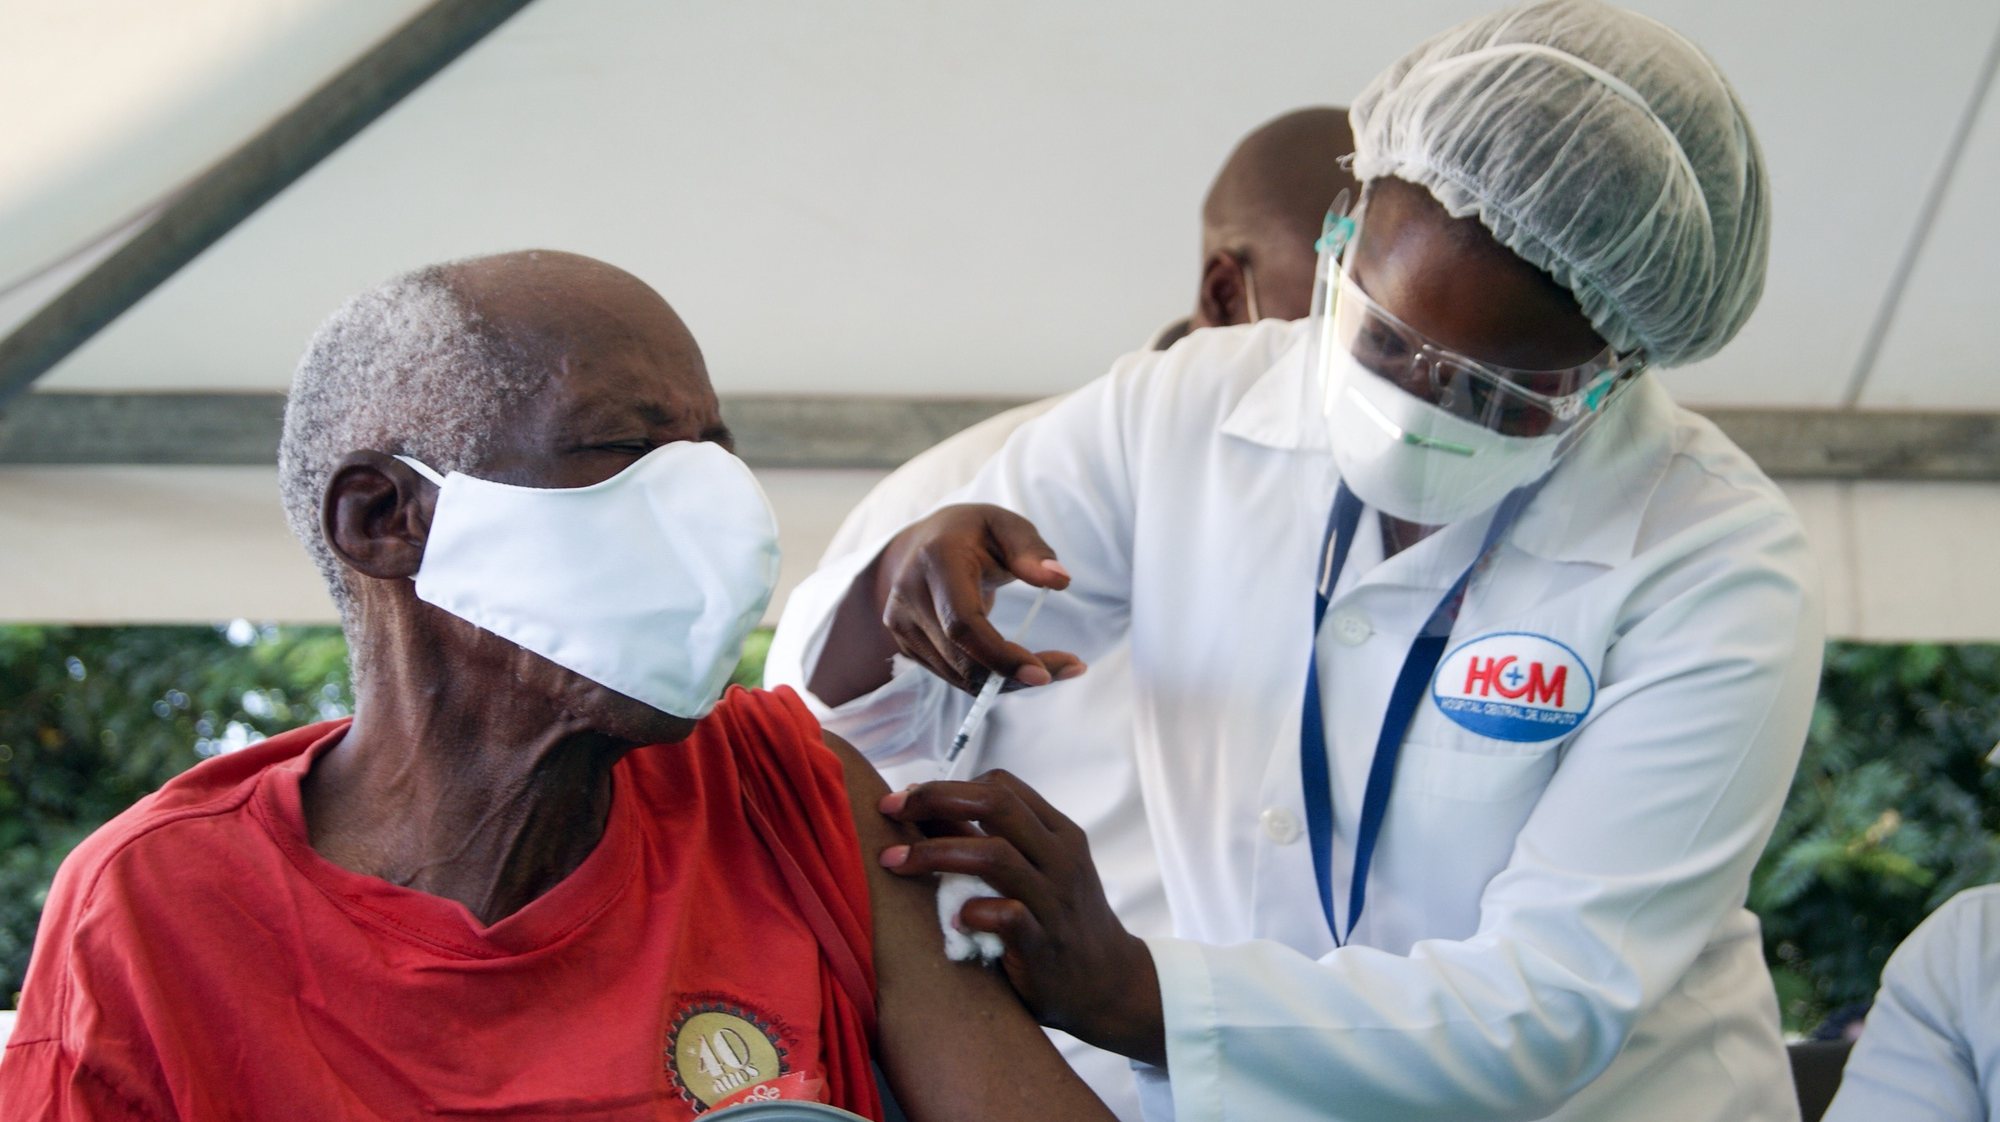 Início da vacinação contra a covid-19 , em Maputo, Moçambique, 08 de março de 2021. O plano de vacinação lançado hoje está estimado em quase dois mil milhões de meticais (23 milhões de euros) e vai dar prioridade aos profissionais que estão na linha da frente do combate à epidemia. LUÍSA NHANTUMBO/LUSA